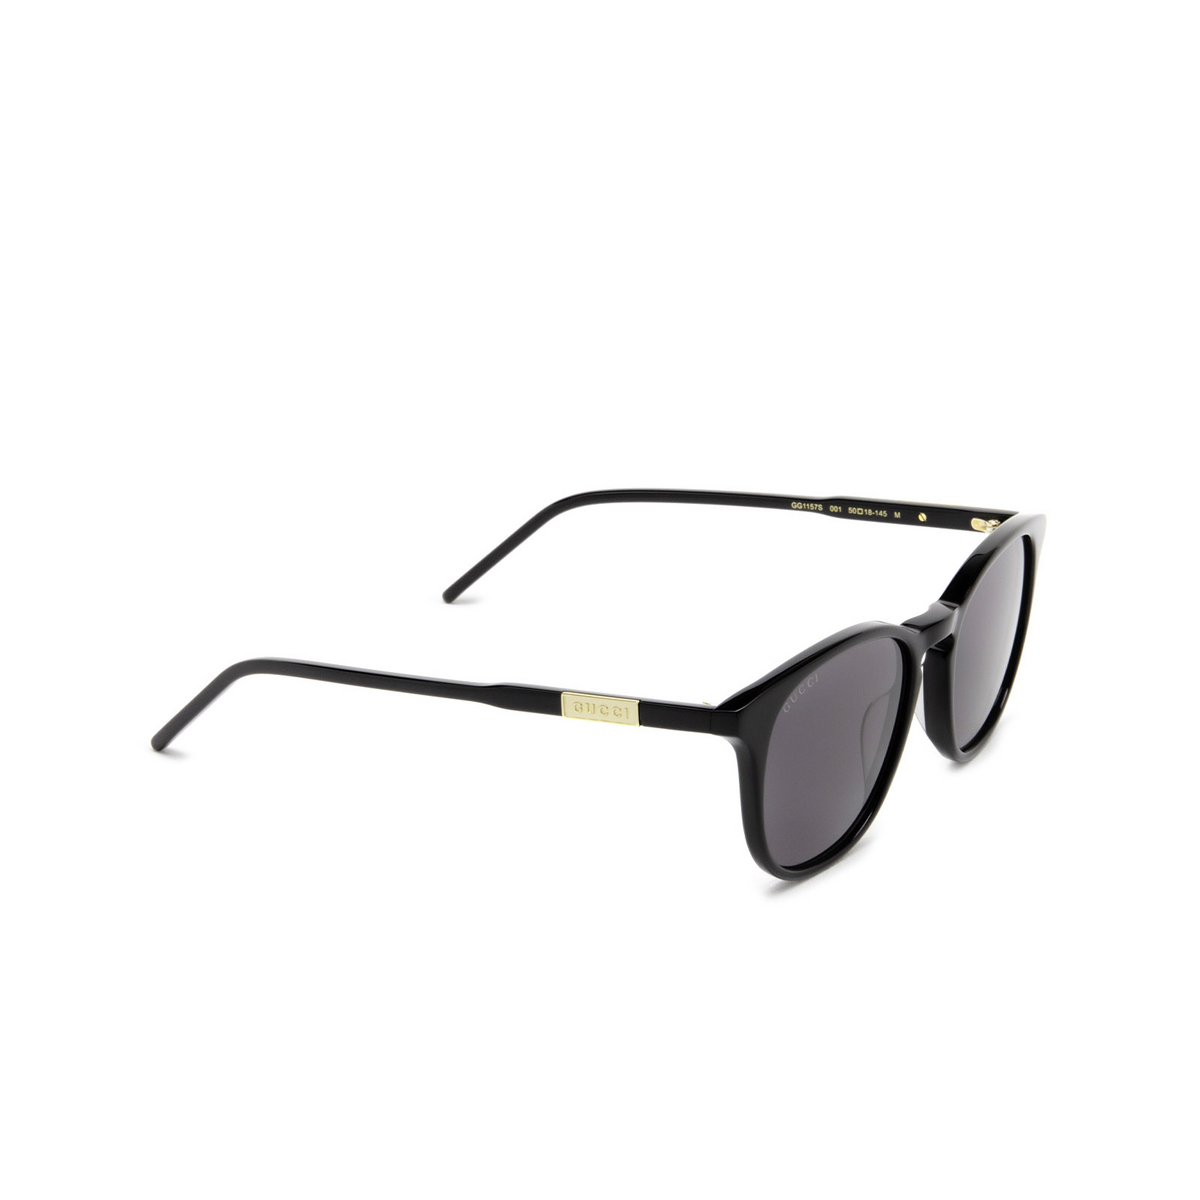 Gucci® Round Sunglasses: GG1157S color Black 001 - three-quarters view.